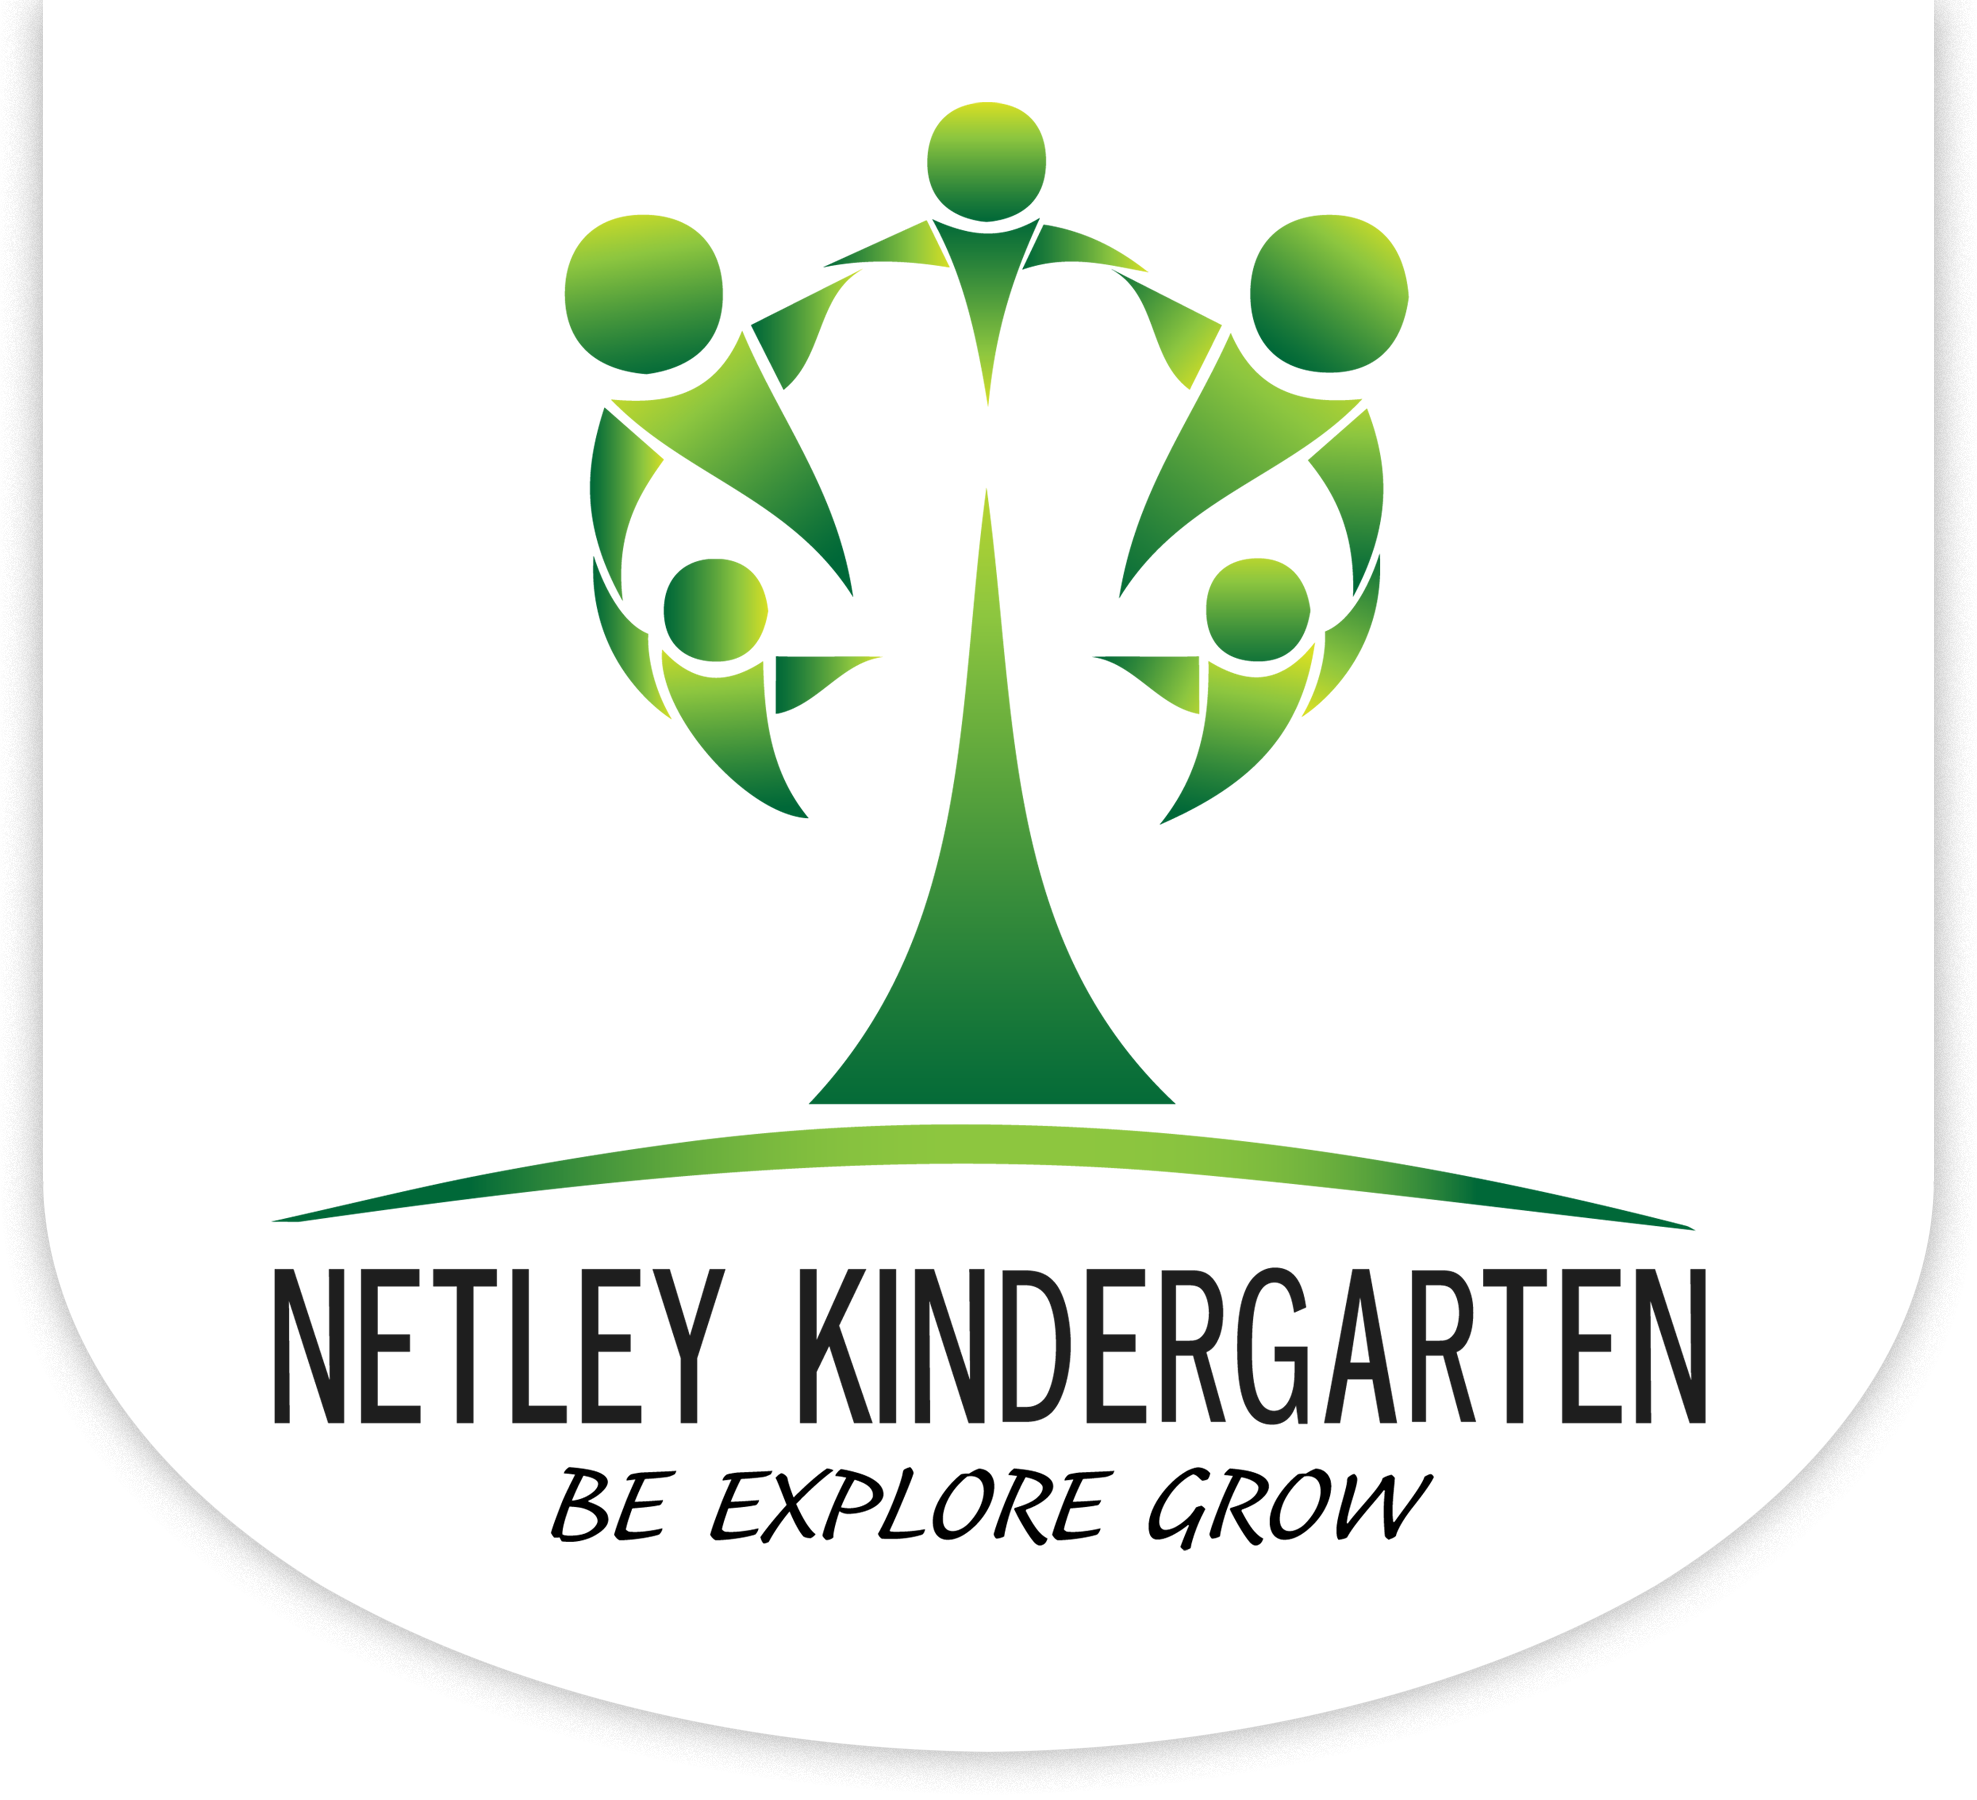 Netley Kindergarten